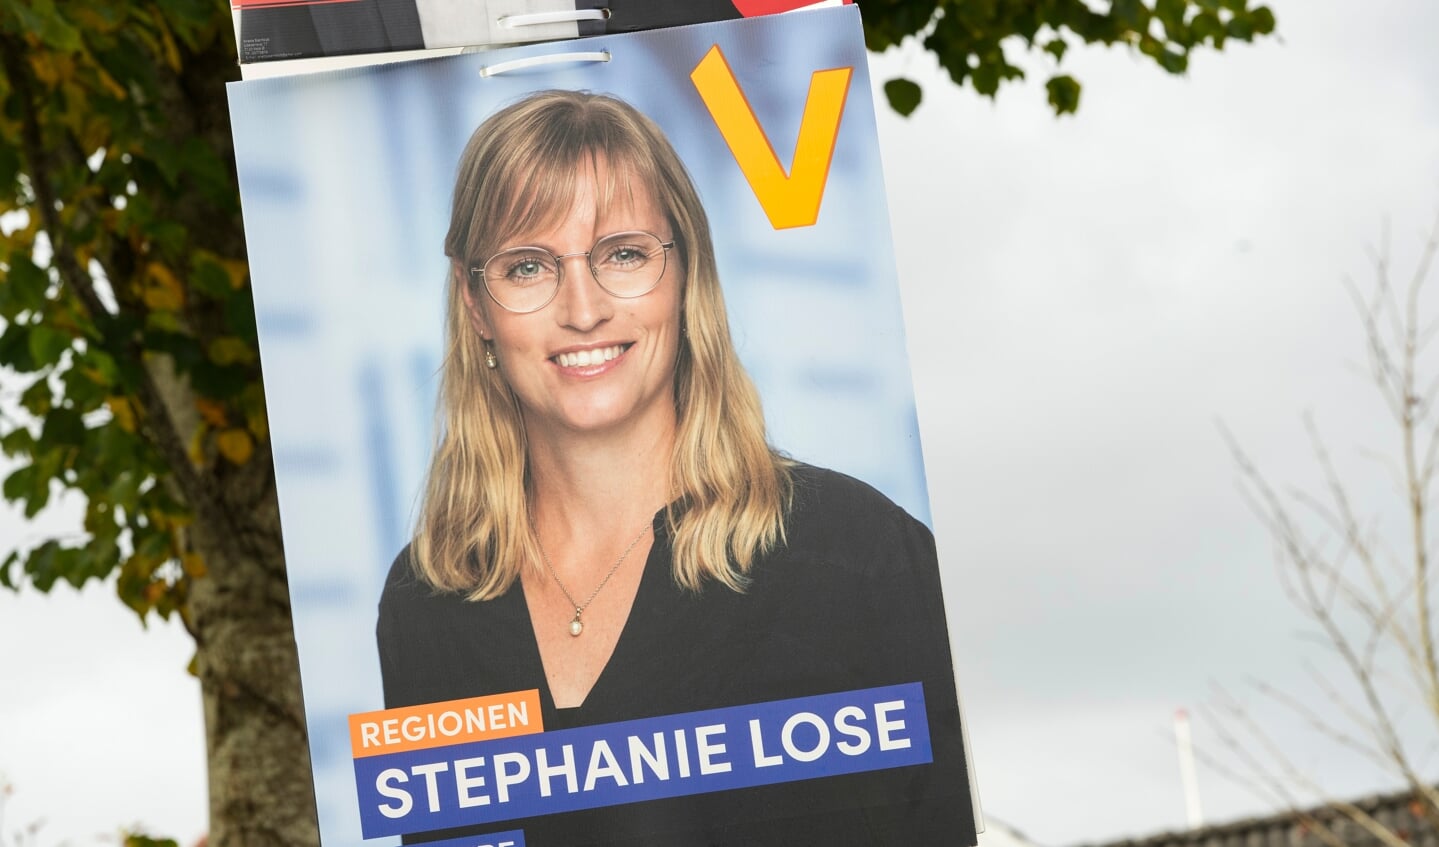 Stephanie Lose kan notere sig en markant valgsejr for Venstre i Region Syddanmark, hvor hun er regionsrådsformand. Det er resultatet ved midnat, hvor en tredjedel af stemmerne er talt op. Foto: